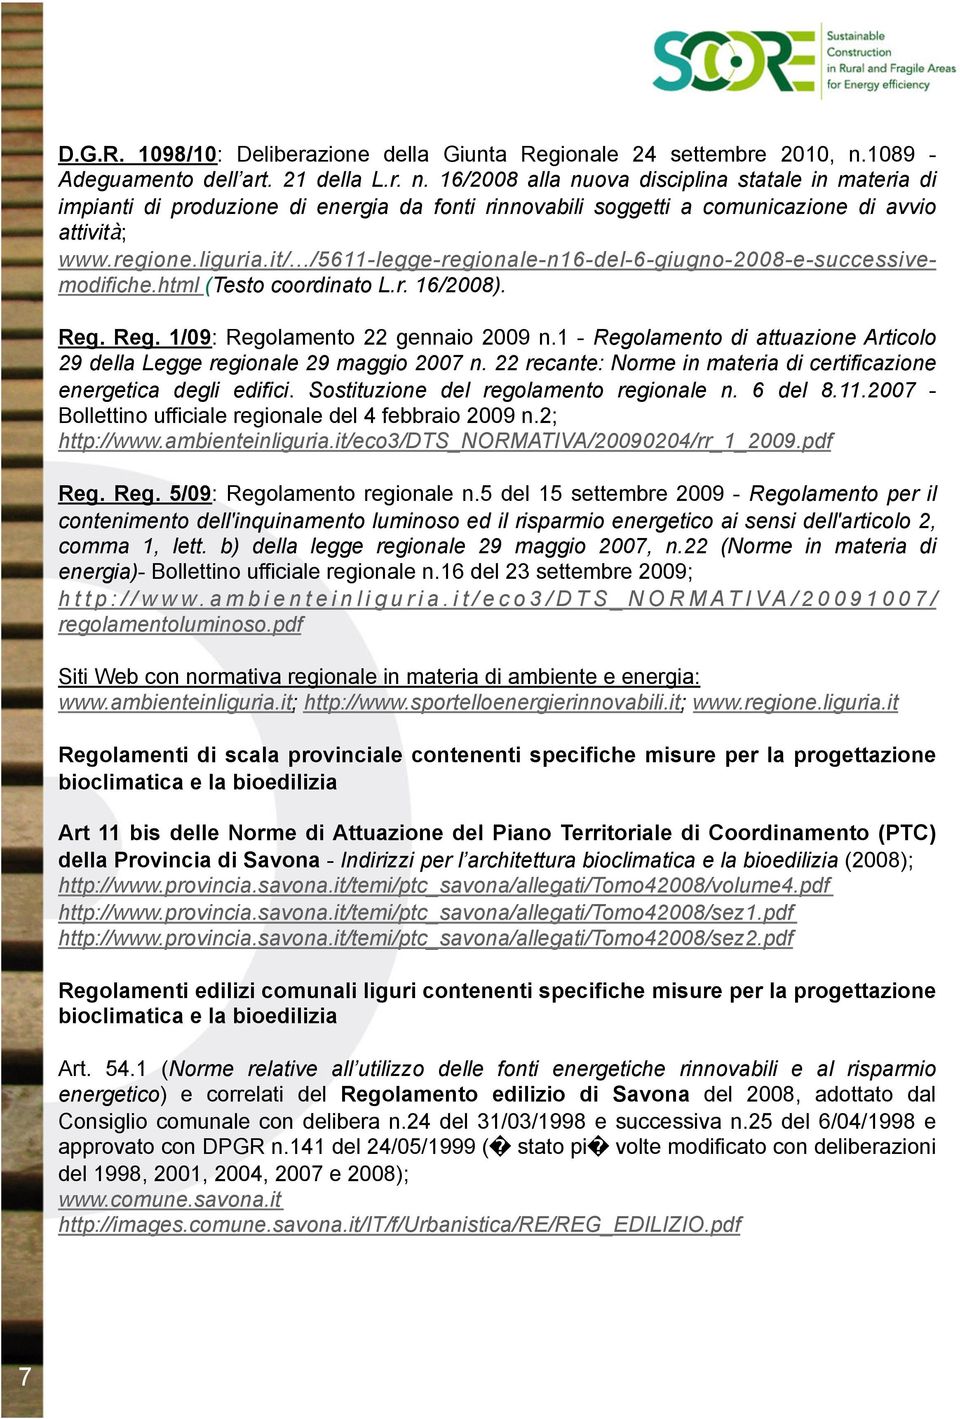 16/2008 alla nuova disciplina statale in materia di impianti di produzione di energia da fonti rinnovabili soggetti a comunicazione di avvio attività; www.regione.liguria.it/.